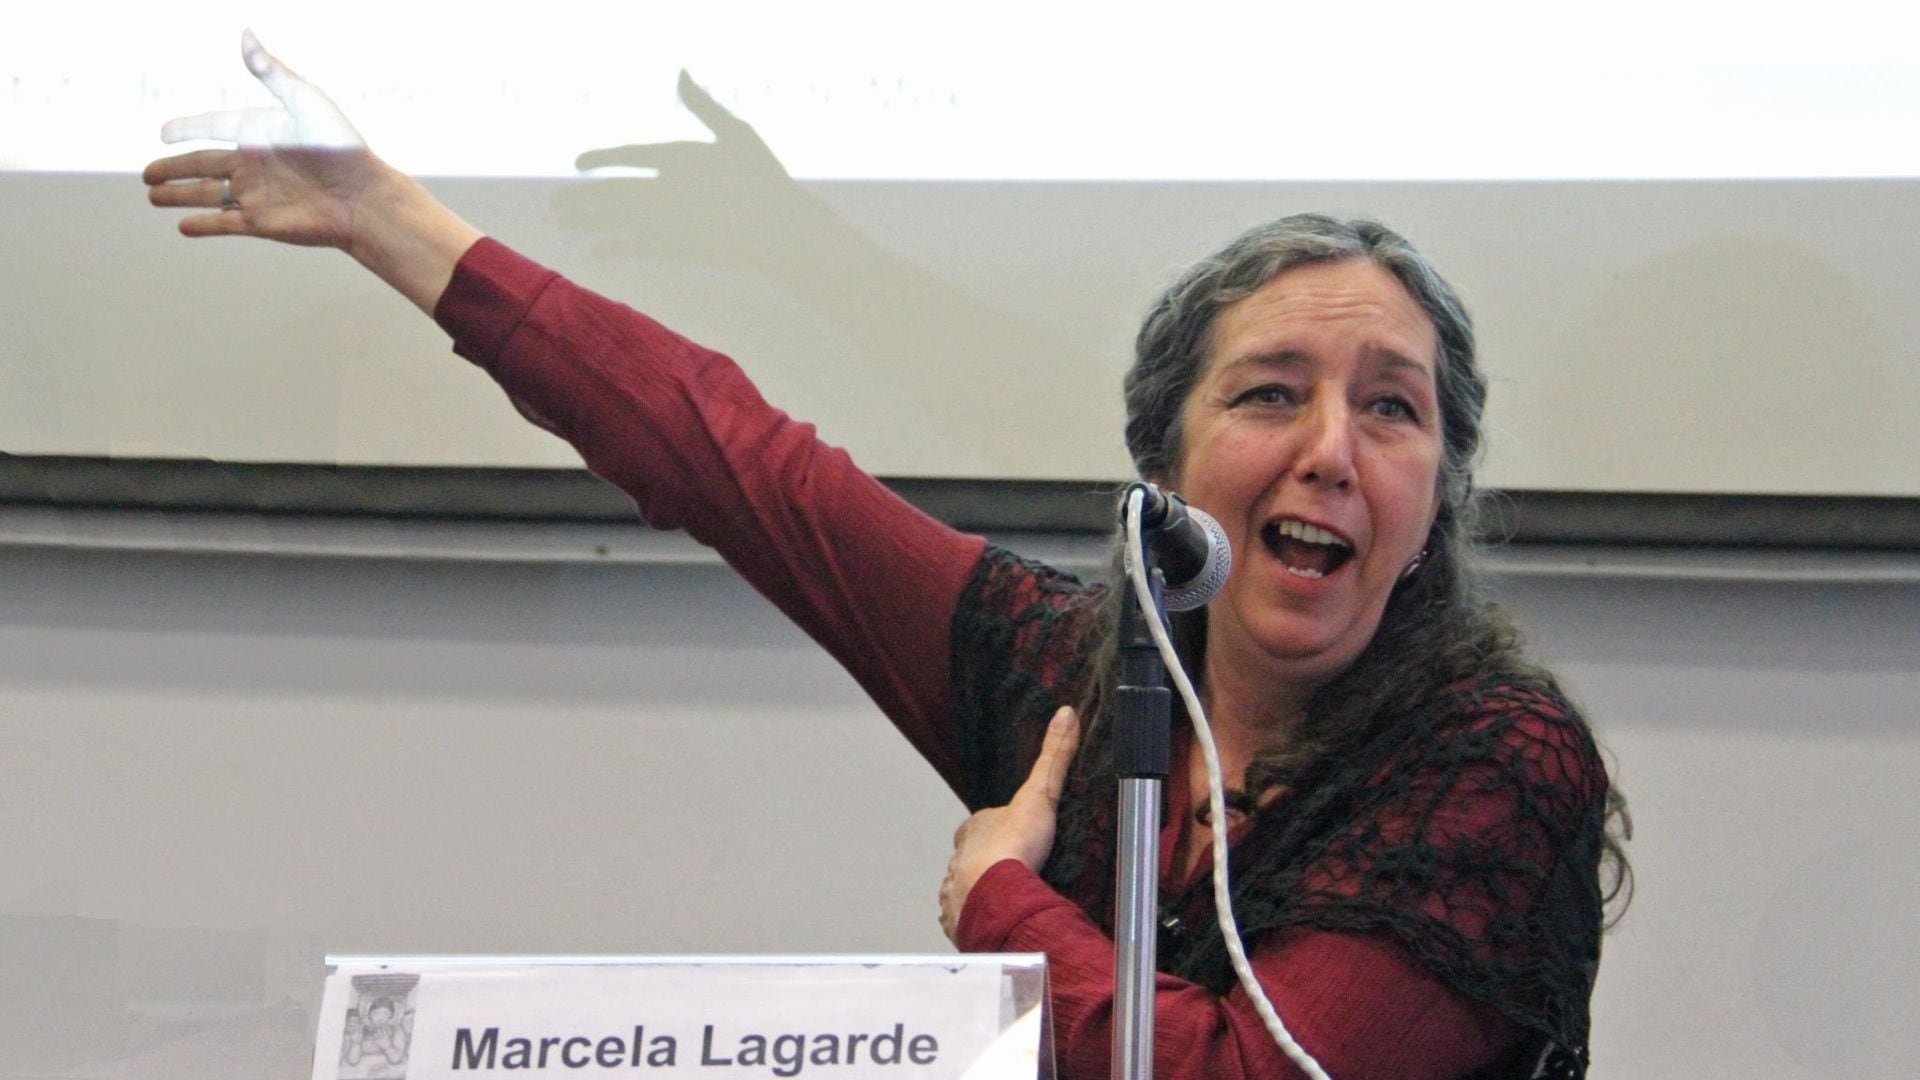 Marcela Lagarde y de los Ríos, antropóloga, investigadora, impulsora del feminismo en México y Latinoamérica